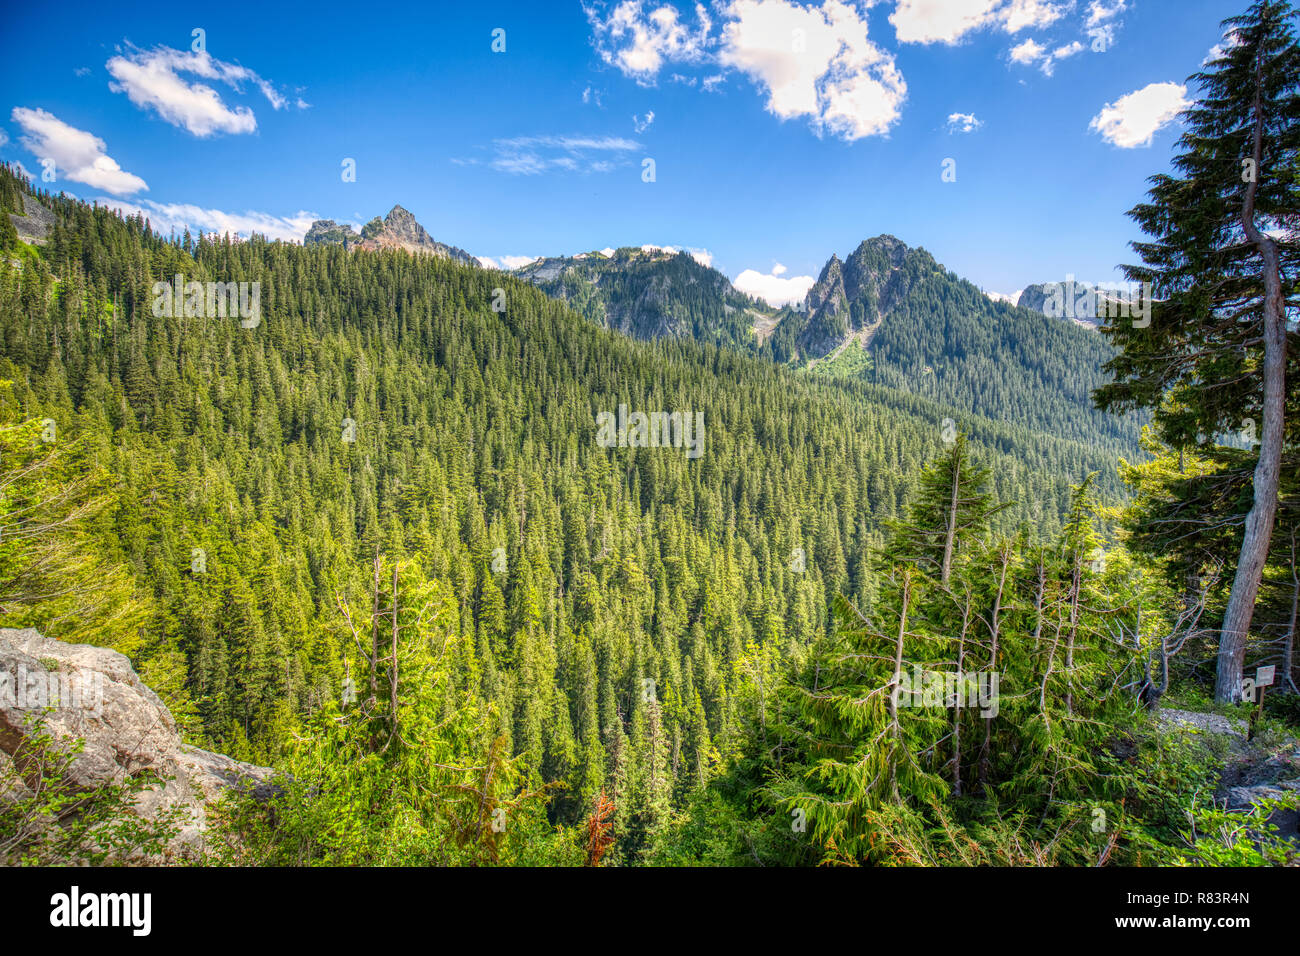 Tausende von Hektar alten Wachstum Wald kann vom malerischen Übersichten gesehen werden, wie diese, in Mt. Rainier National Park. Stockfoto